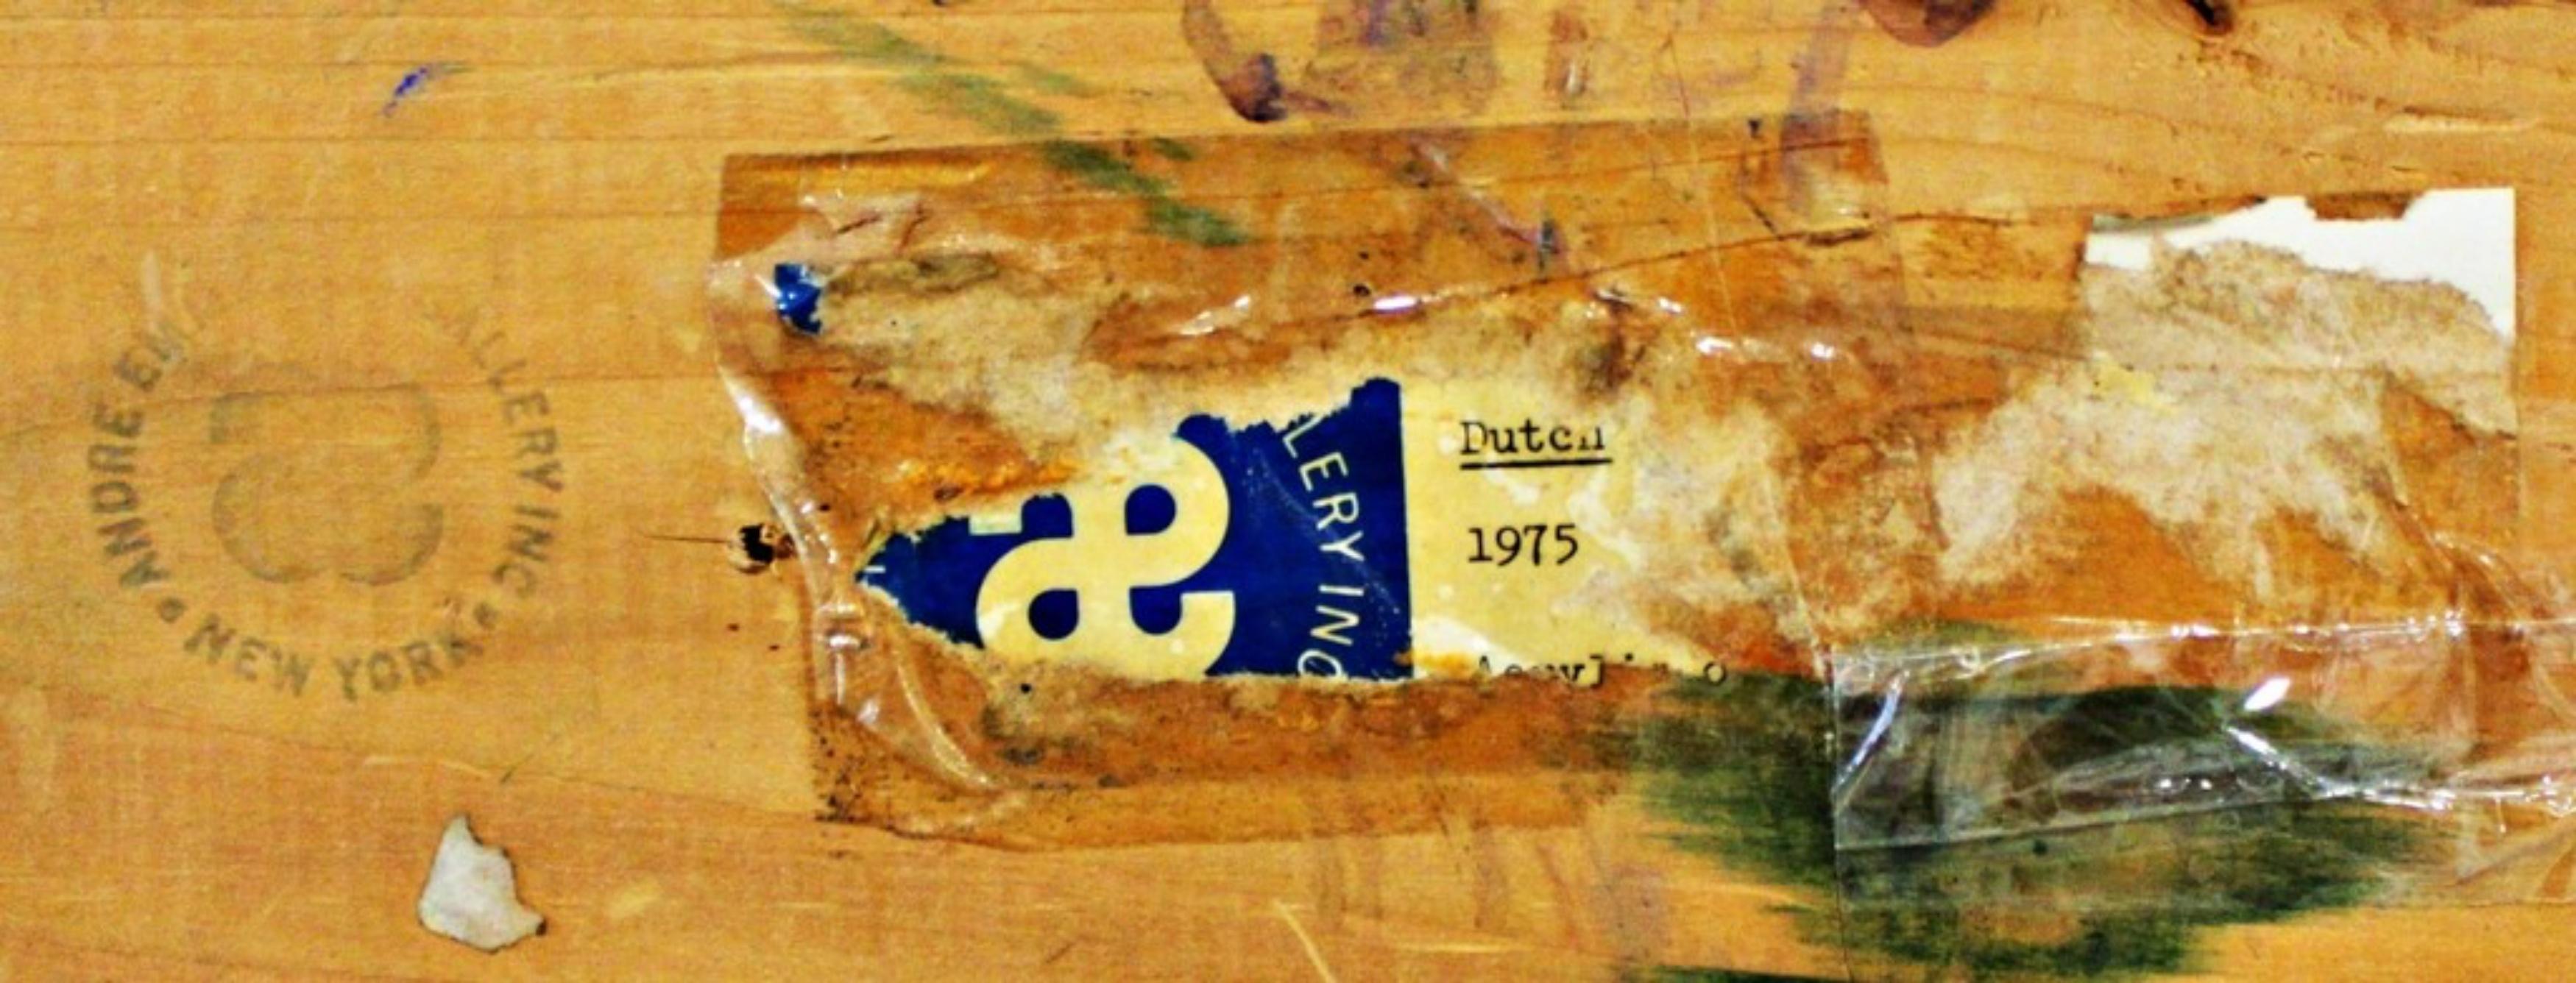 PHILIP WOFFORD
Niederländisch (Andre Emmerich Gallery), 1975
Acryl auf Leinwand Gemälde
73 Zoll x 73 Zoll x 2 Zoll
Verso handsigniert, betitelt und datiert
Dies ist ein einzigartiges Gemälde 
Gerahmt: auf den originalen Vintage-Holzrahmen des